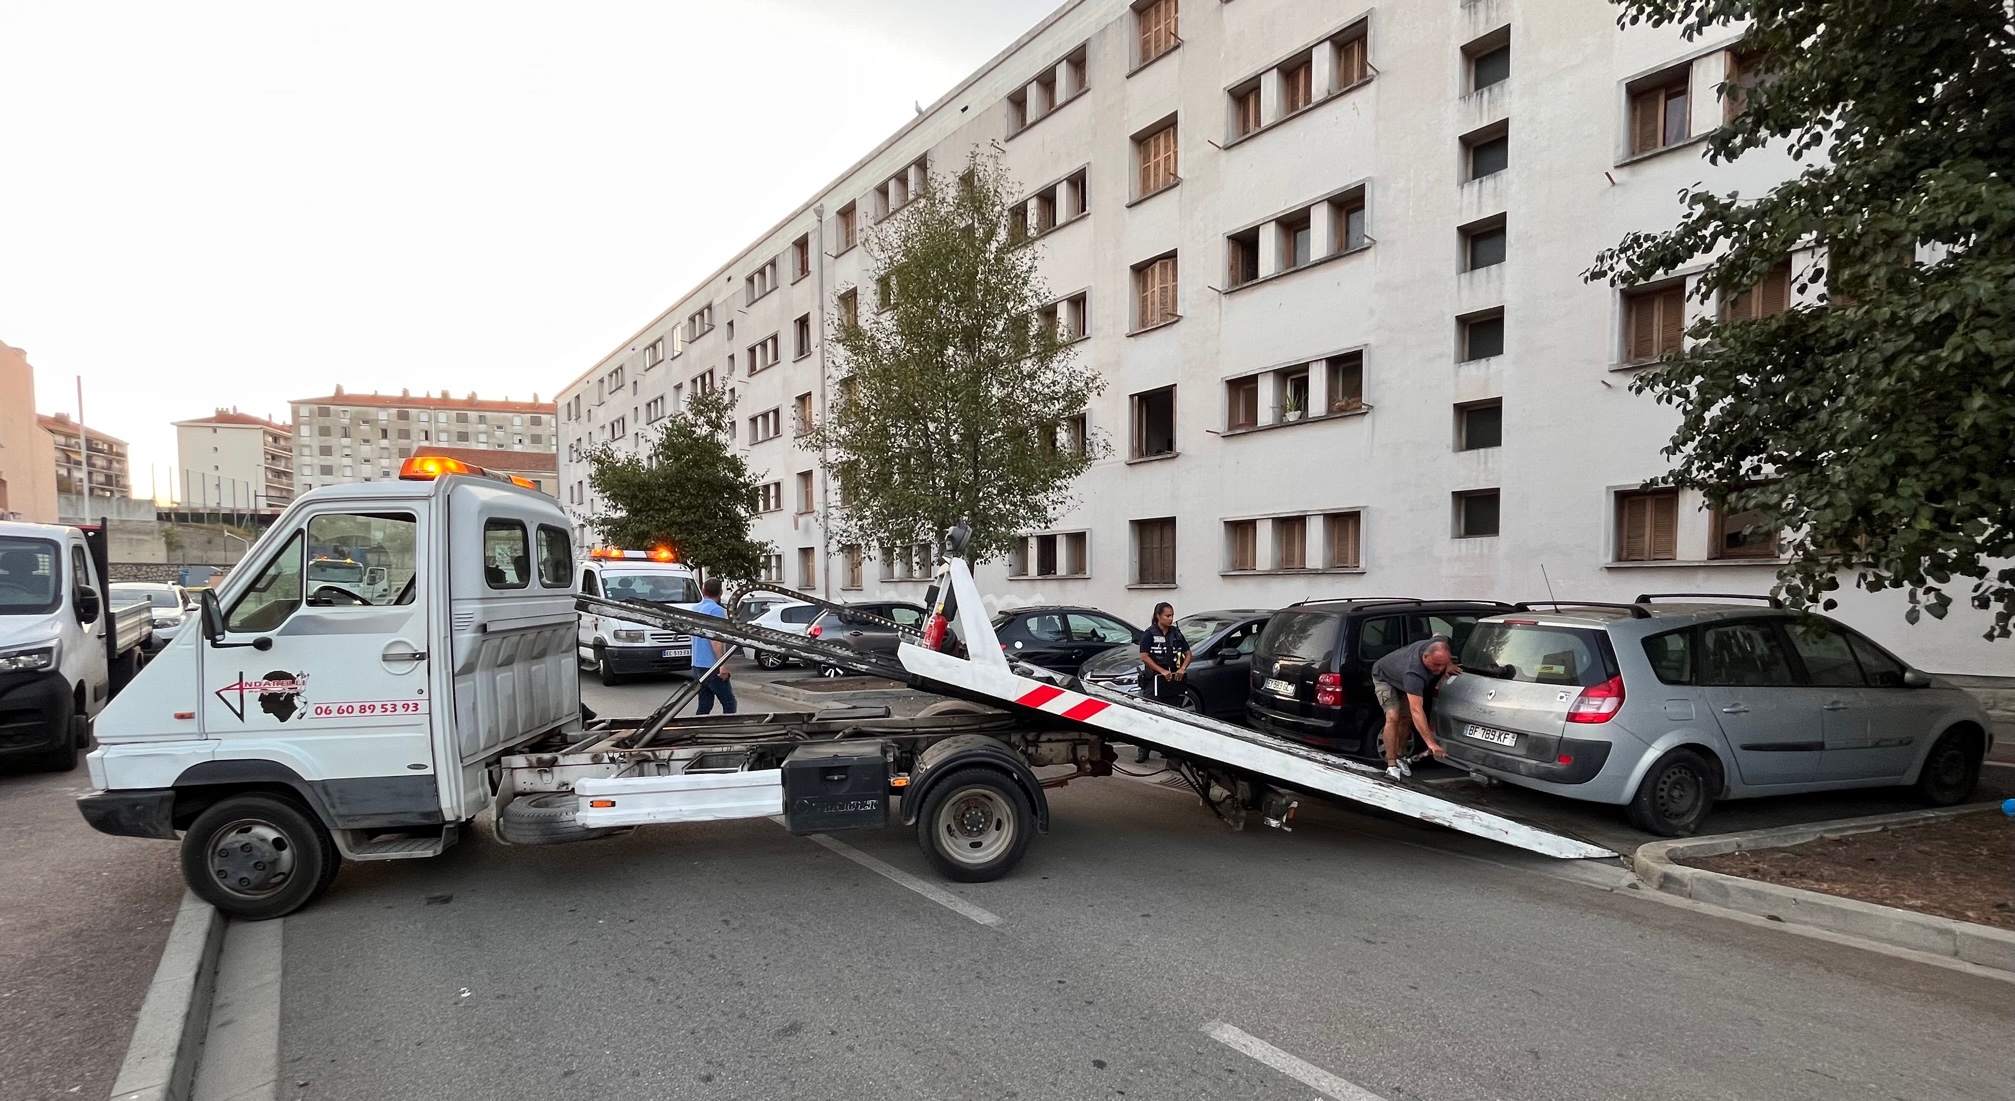 Onze véhicules épaves ont été enlevés ce matin dans le quartier des Cannes à Ajaccio